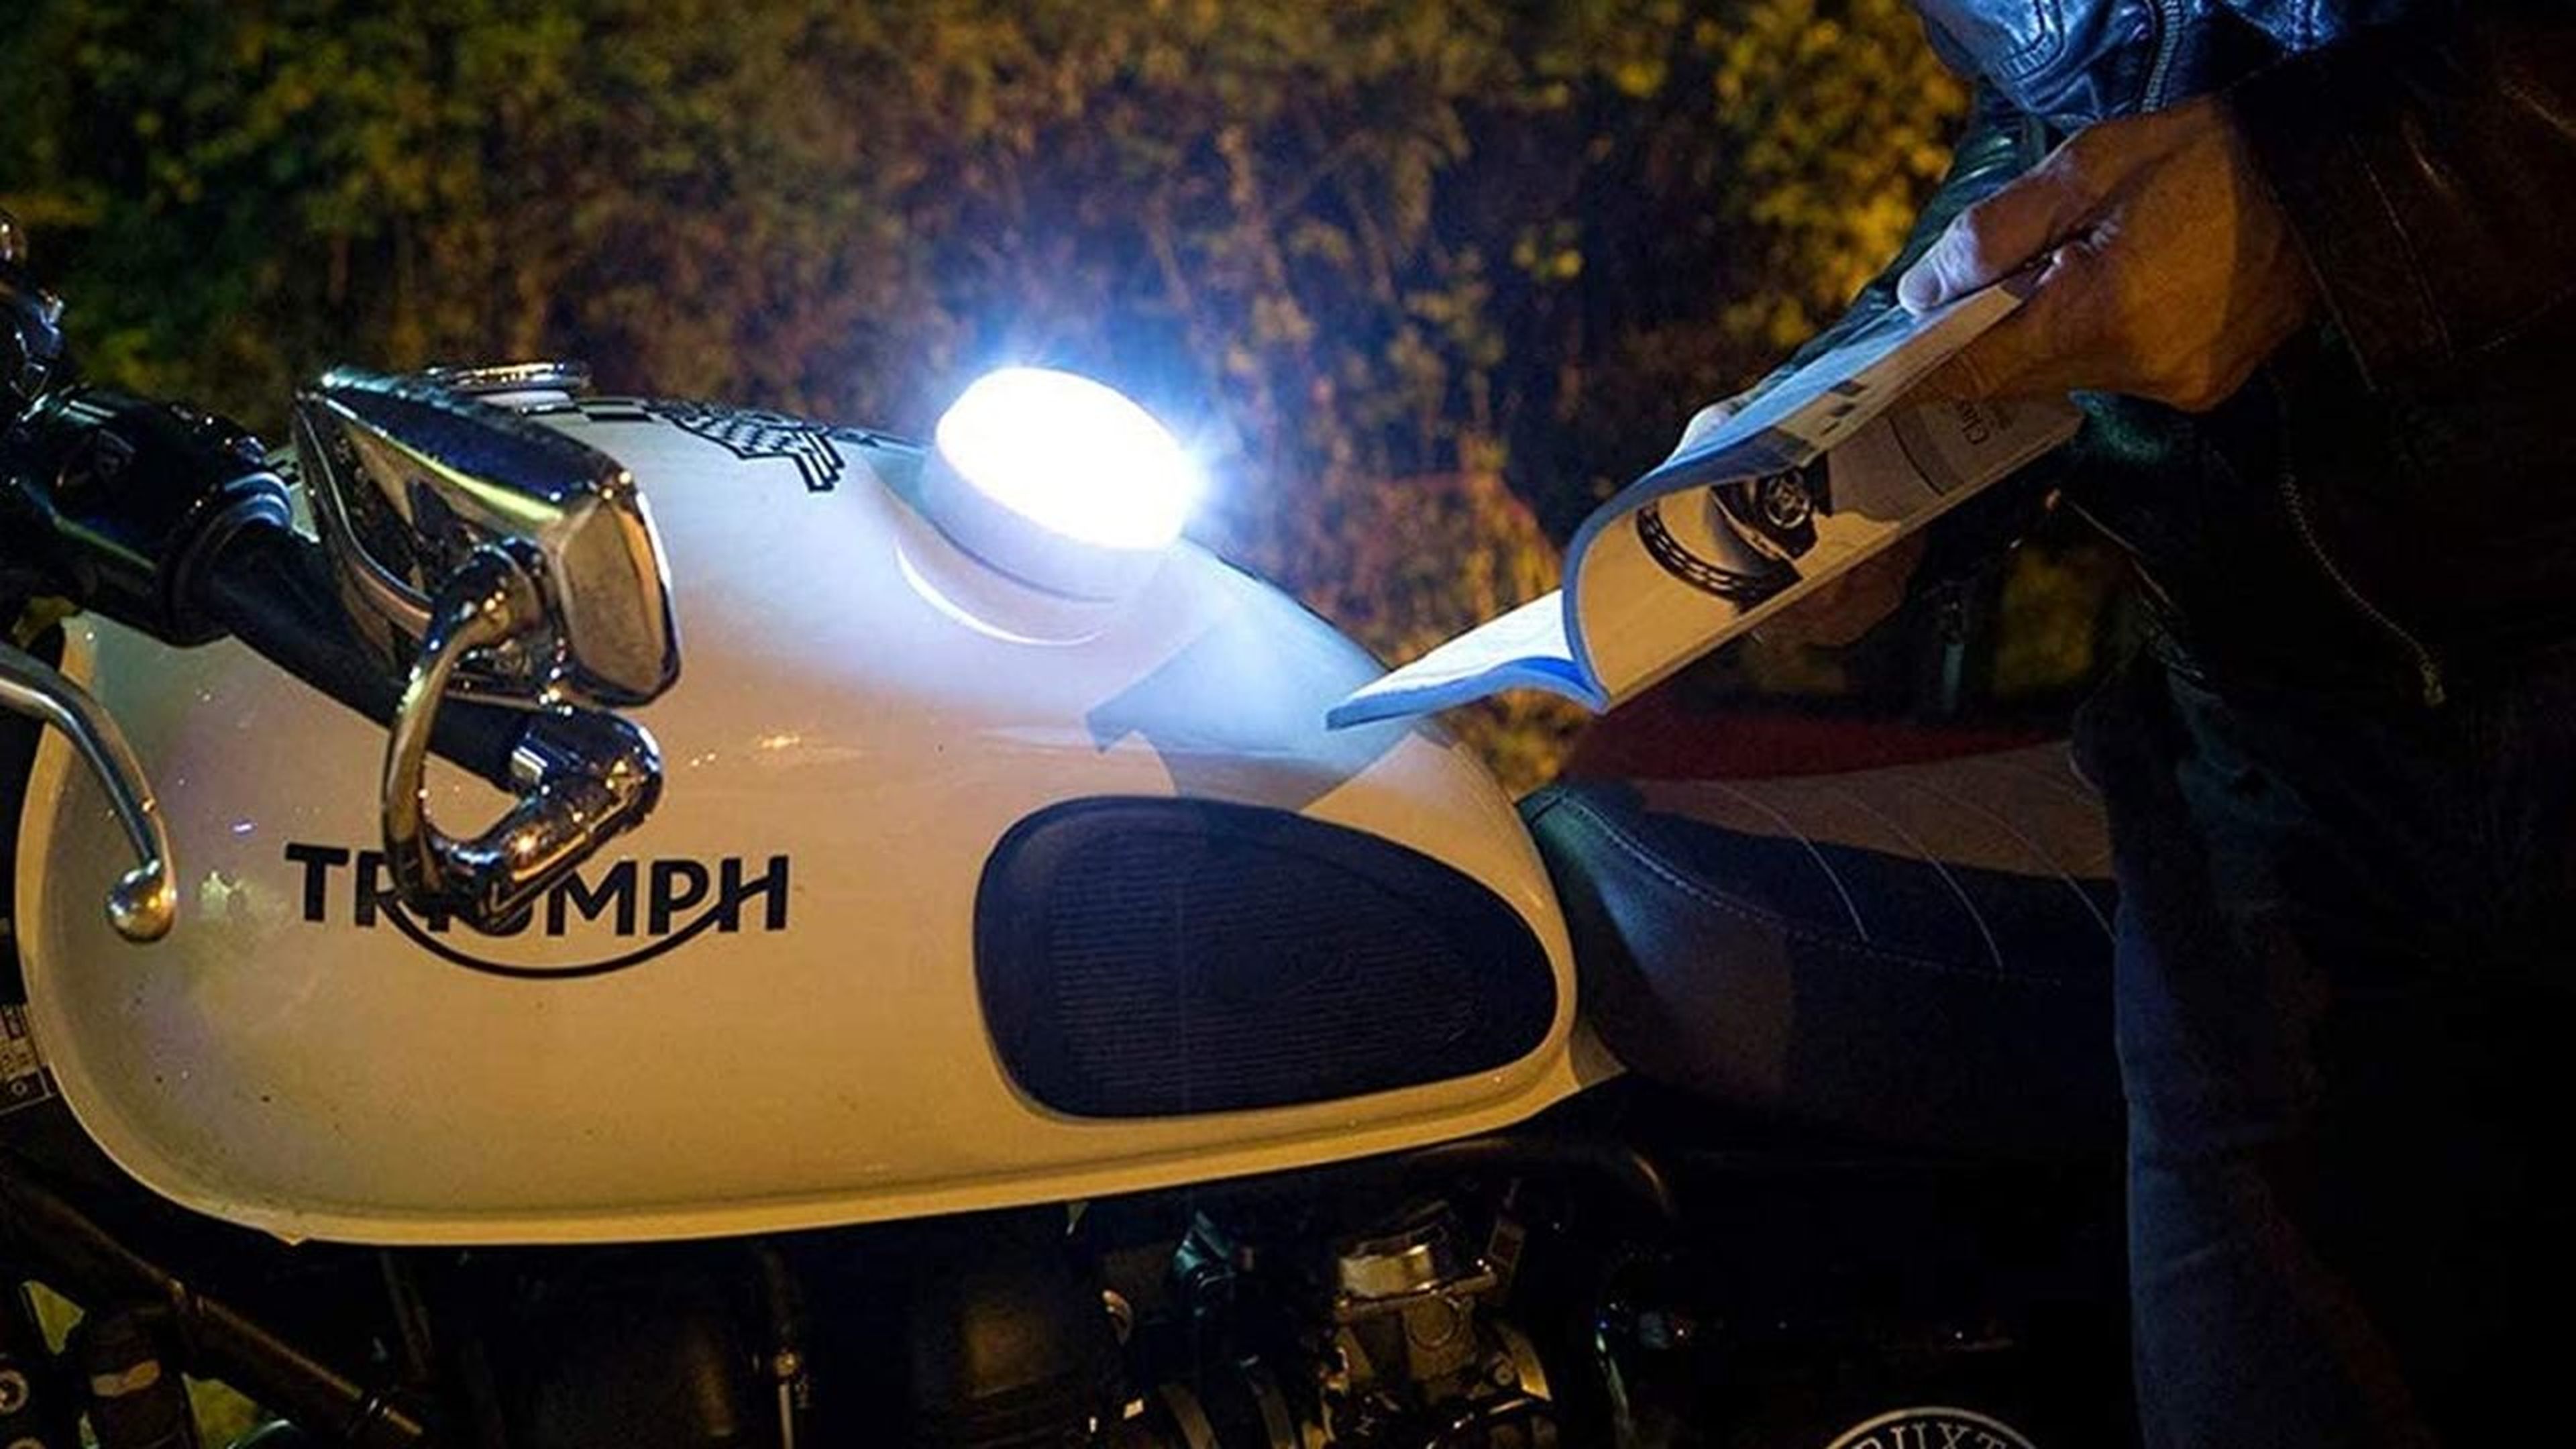 luz v16 dgt motos